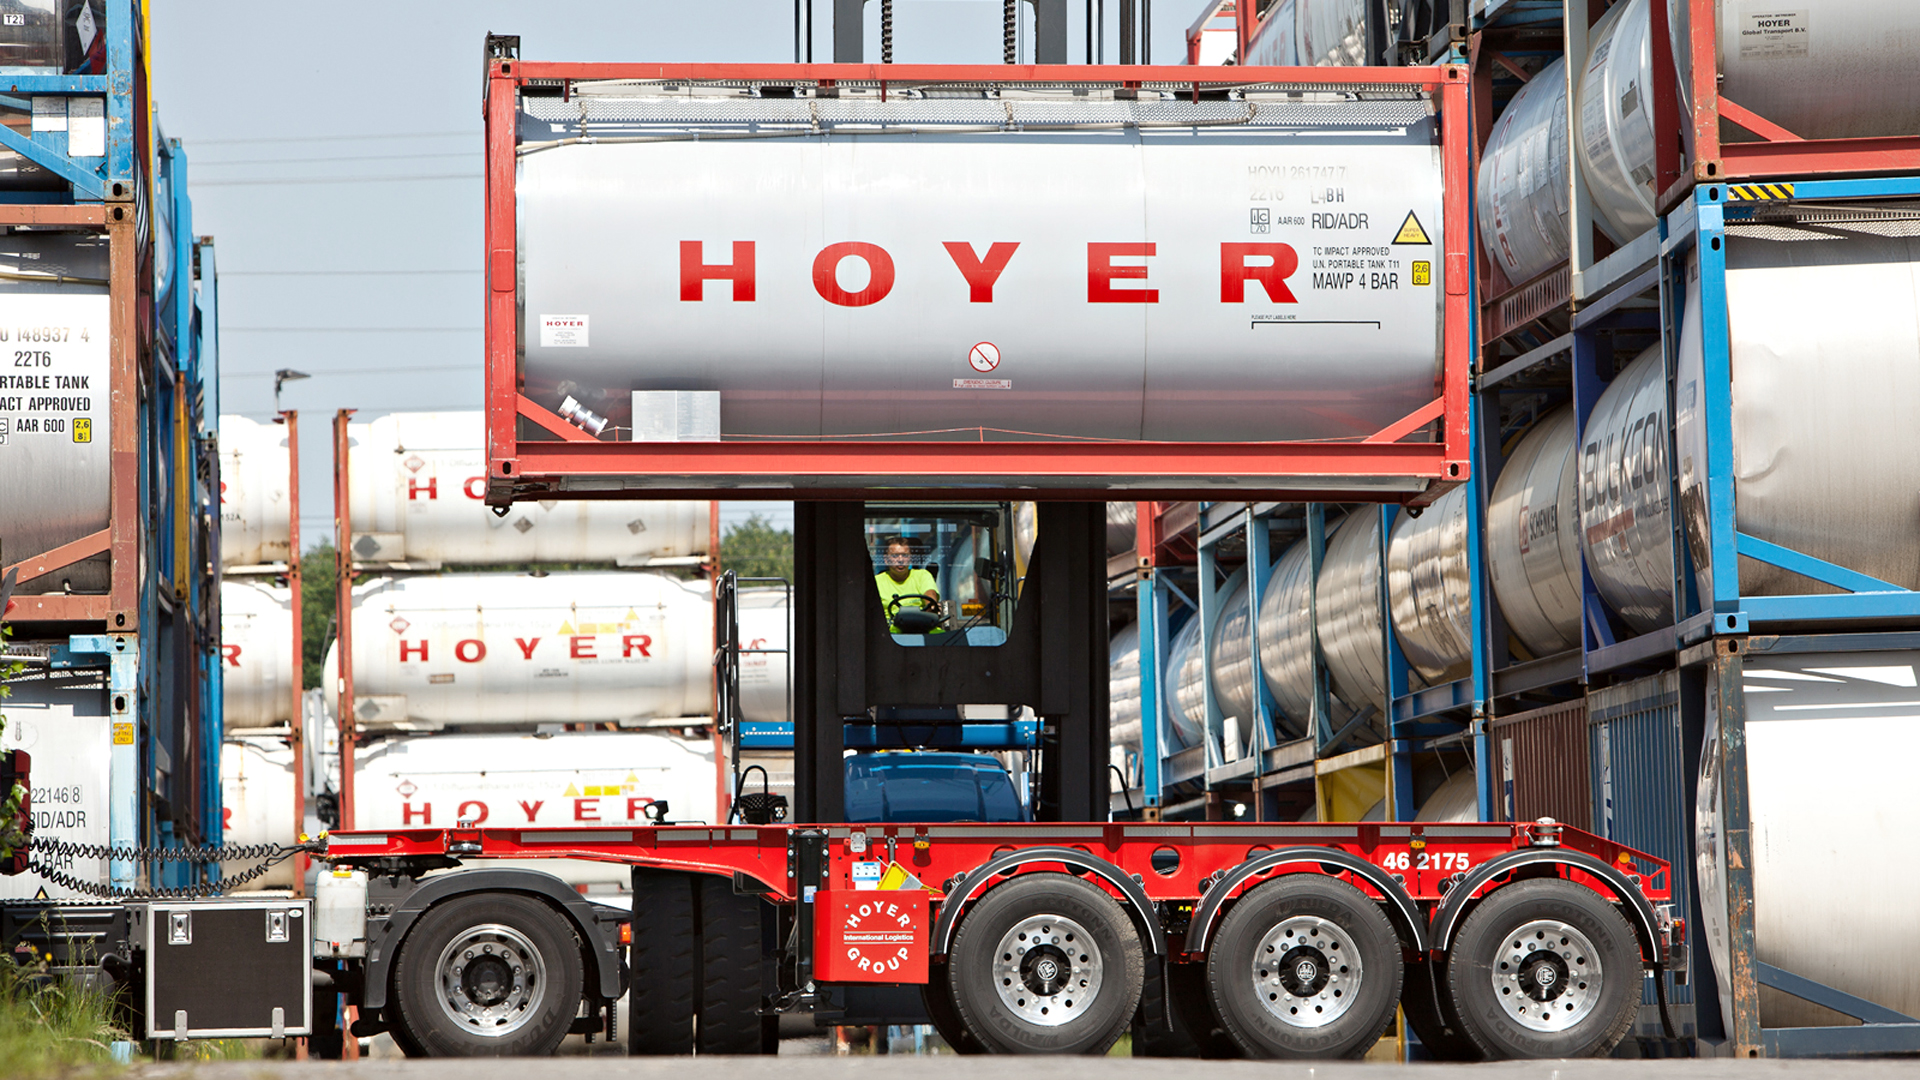 20.08.2019: HOYER Group baut grüne Flotte in Nordrhein-Westfalen